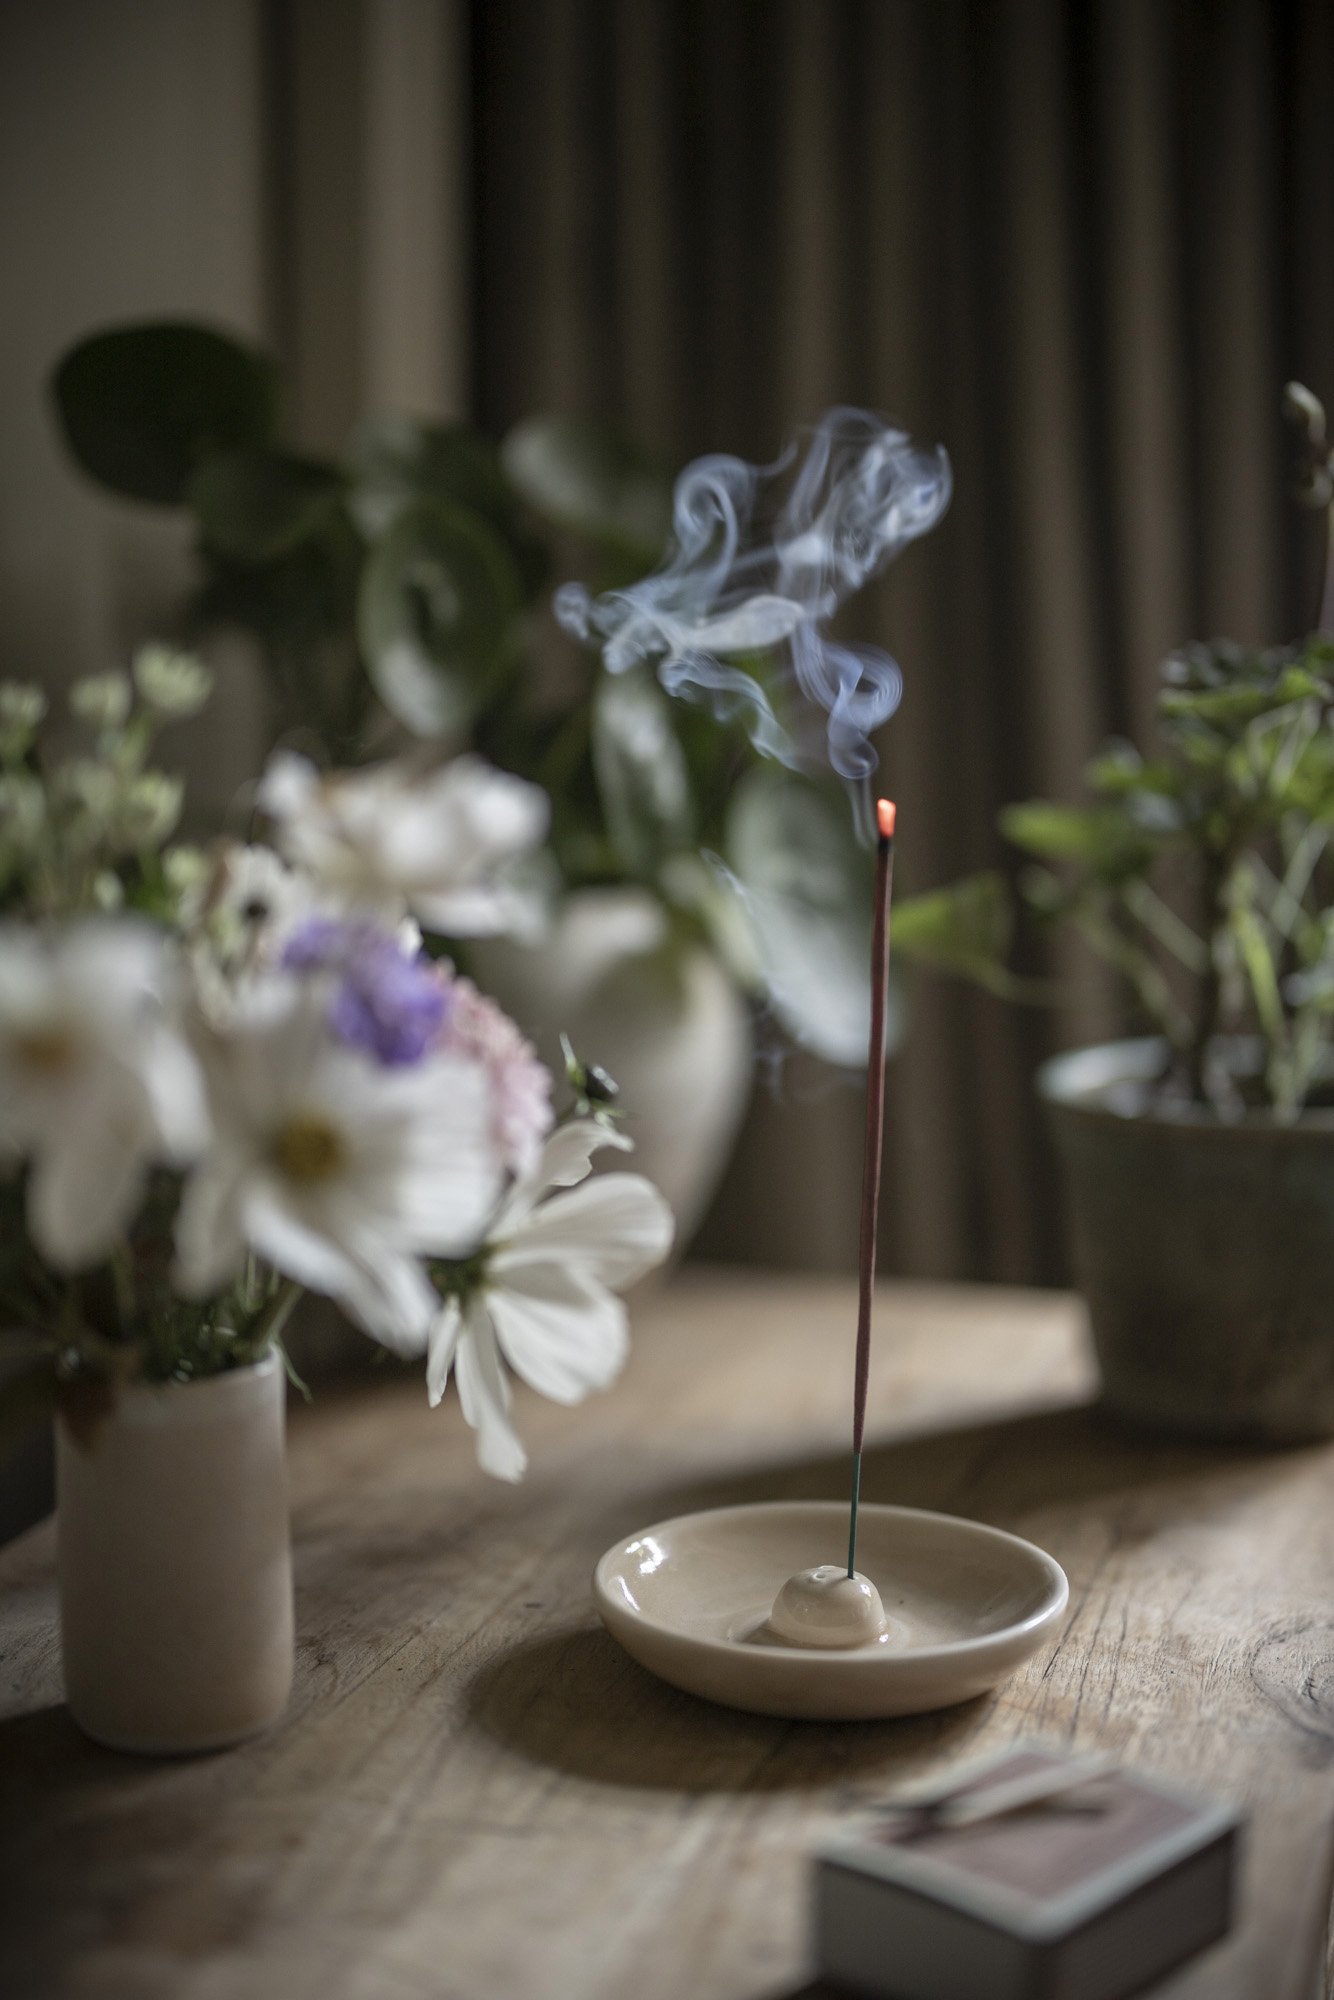 Burning Sacred Elephant rose incense.